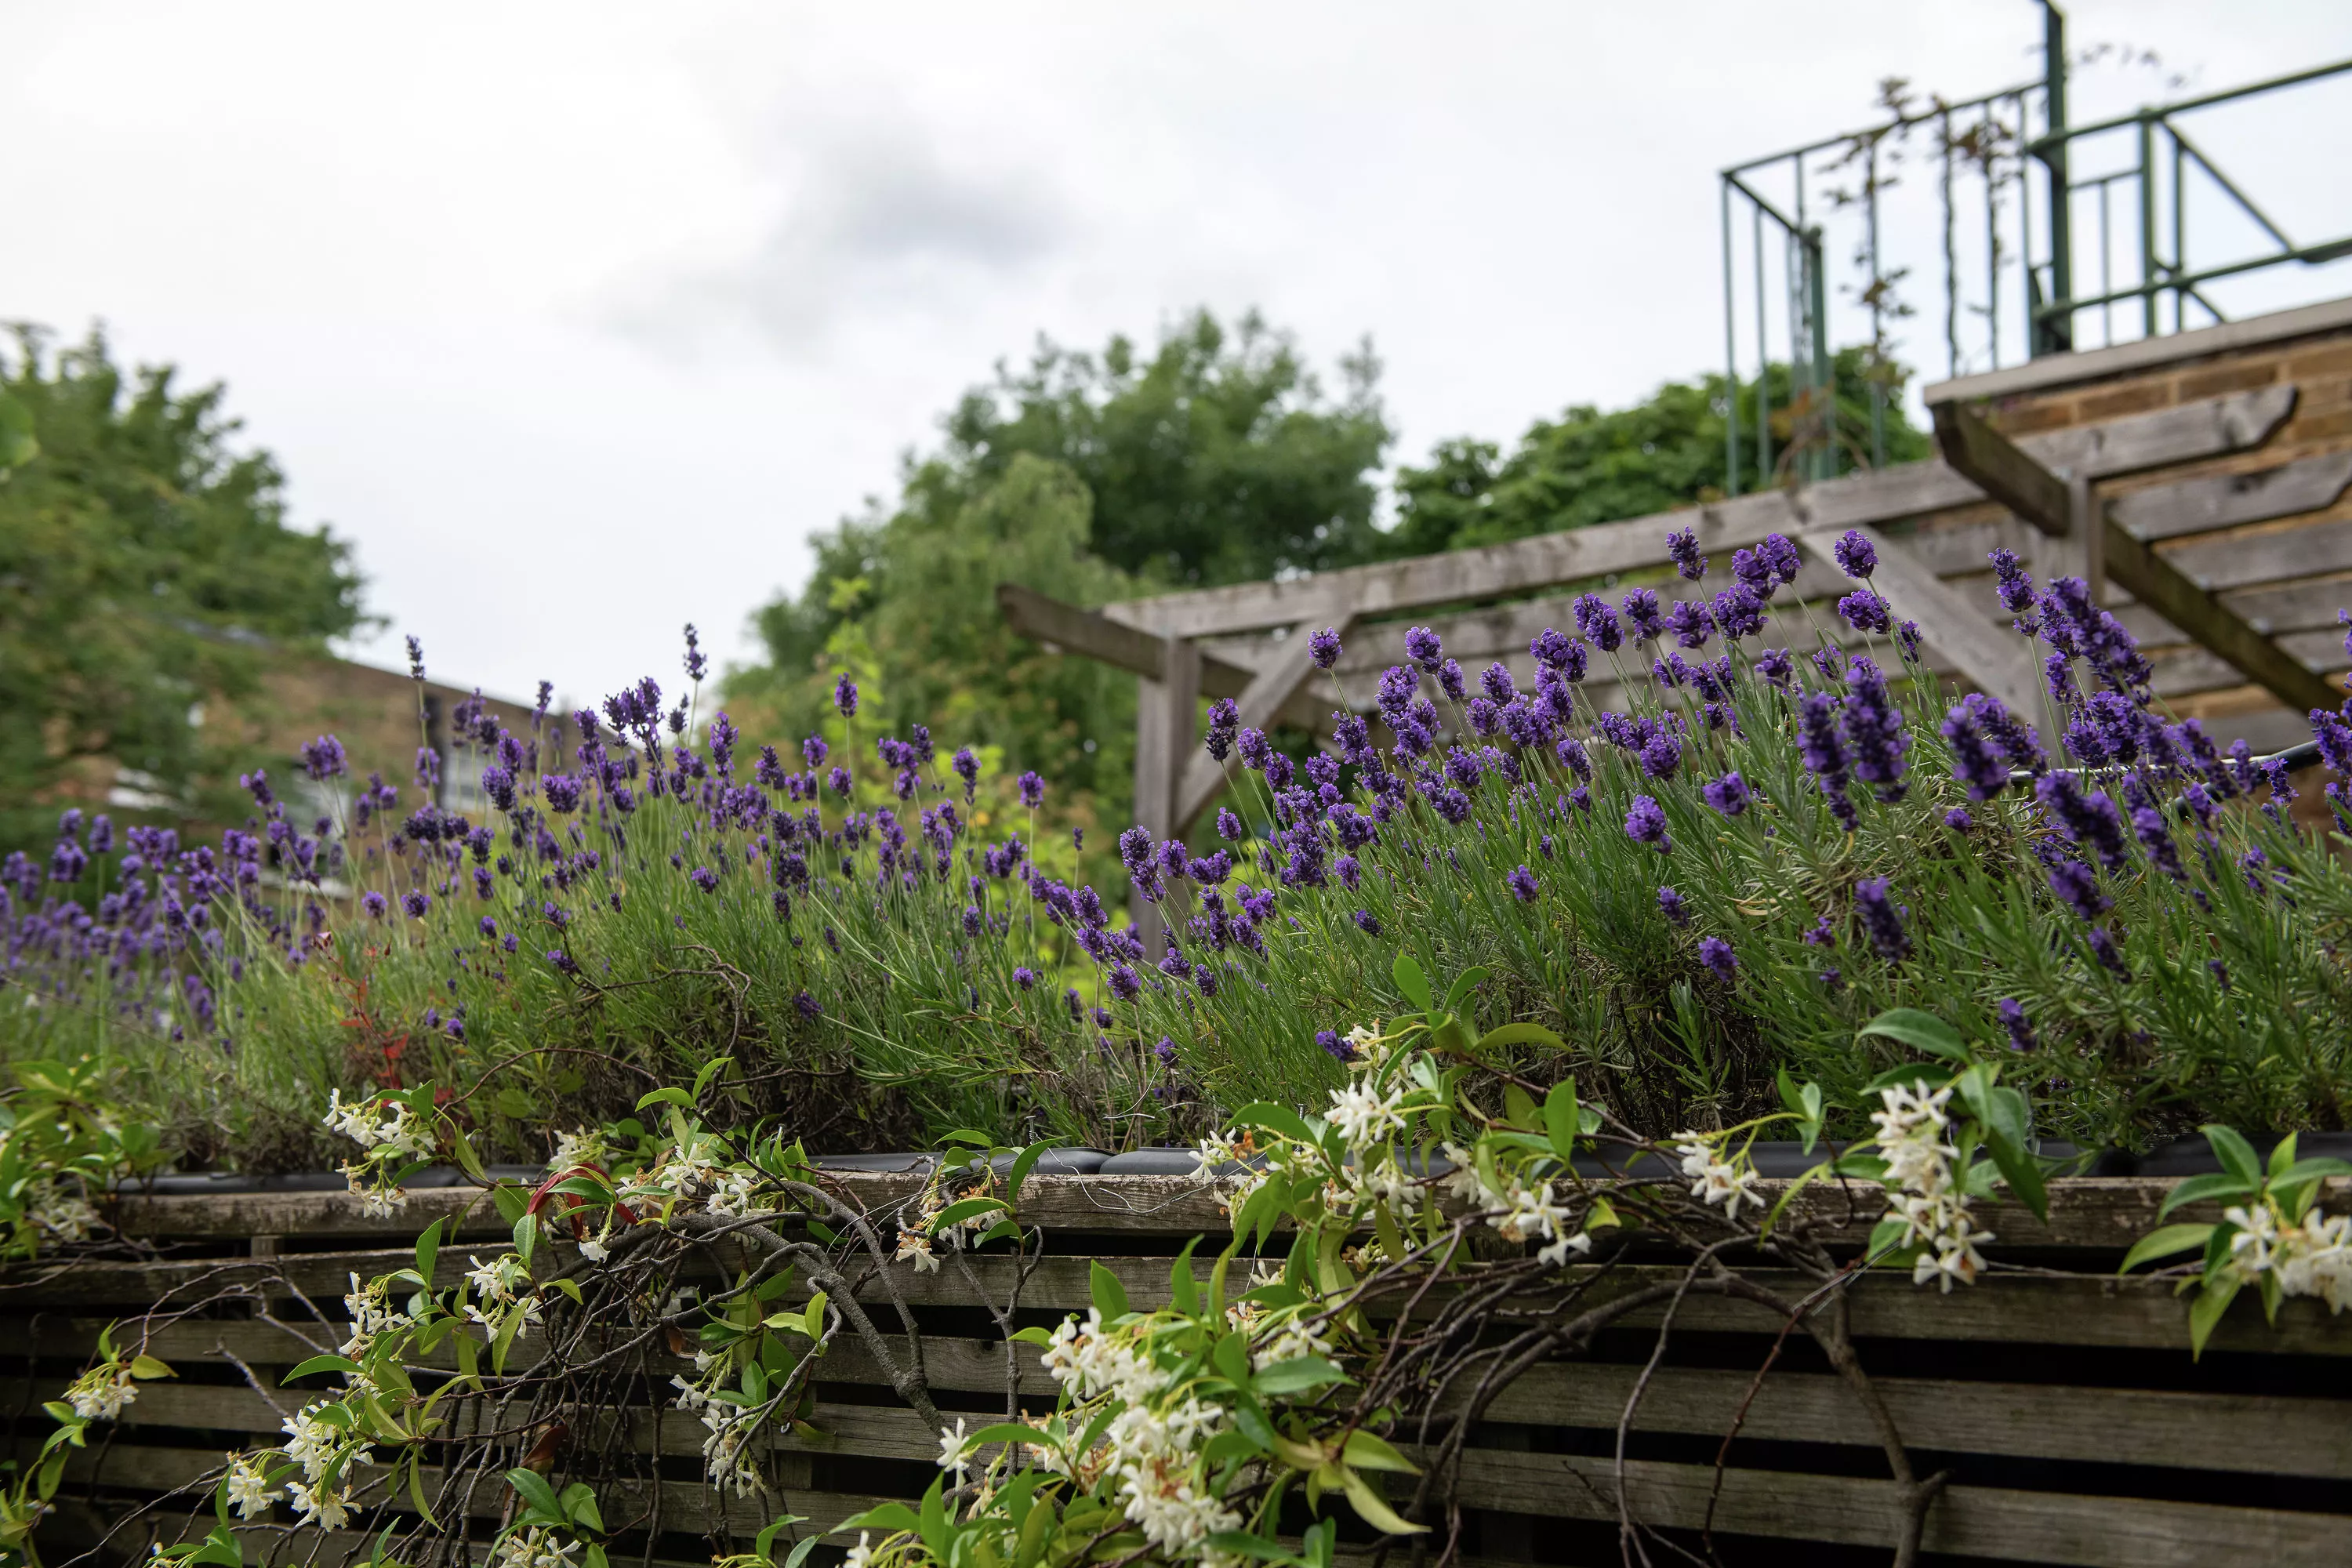 Gros plan de plantes de lavande dans un jardin sur le toit urbain avec des structures en bois.